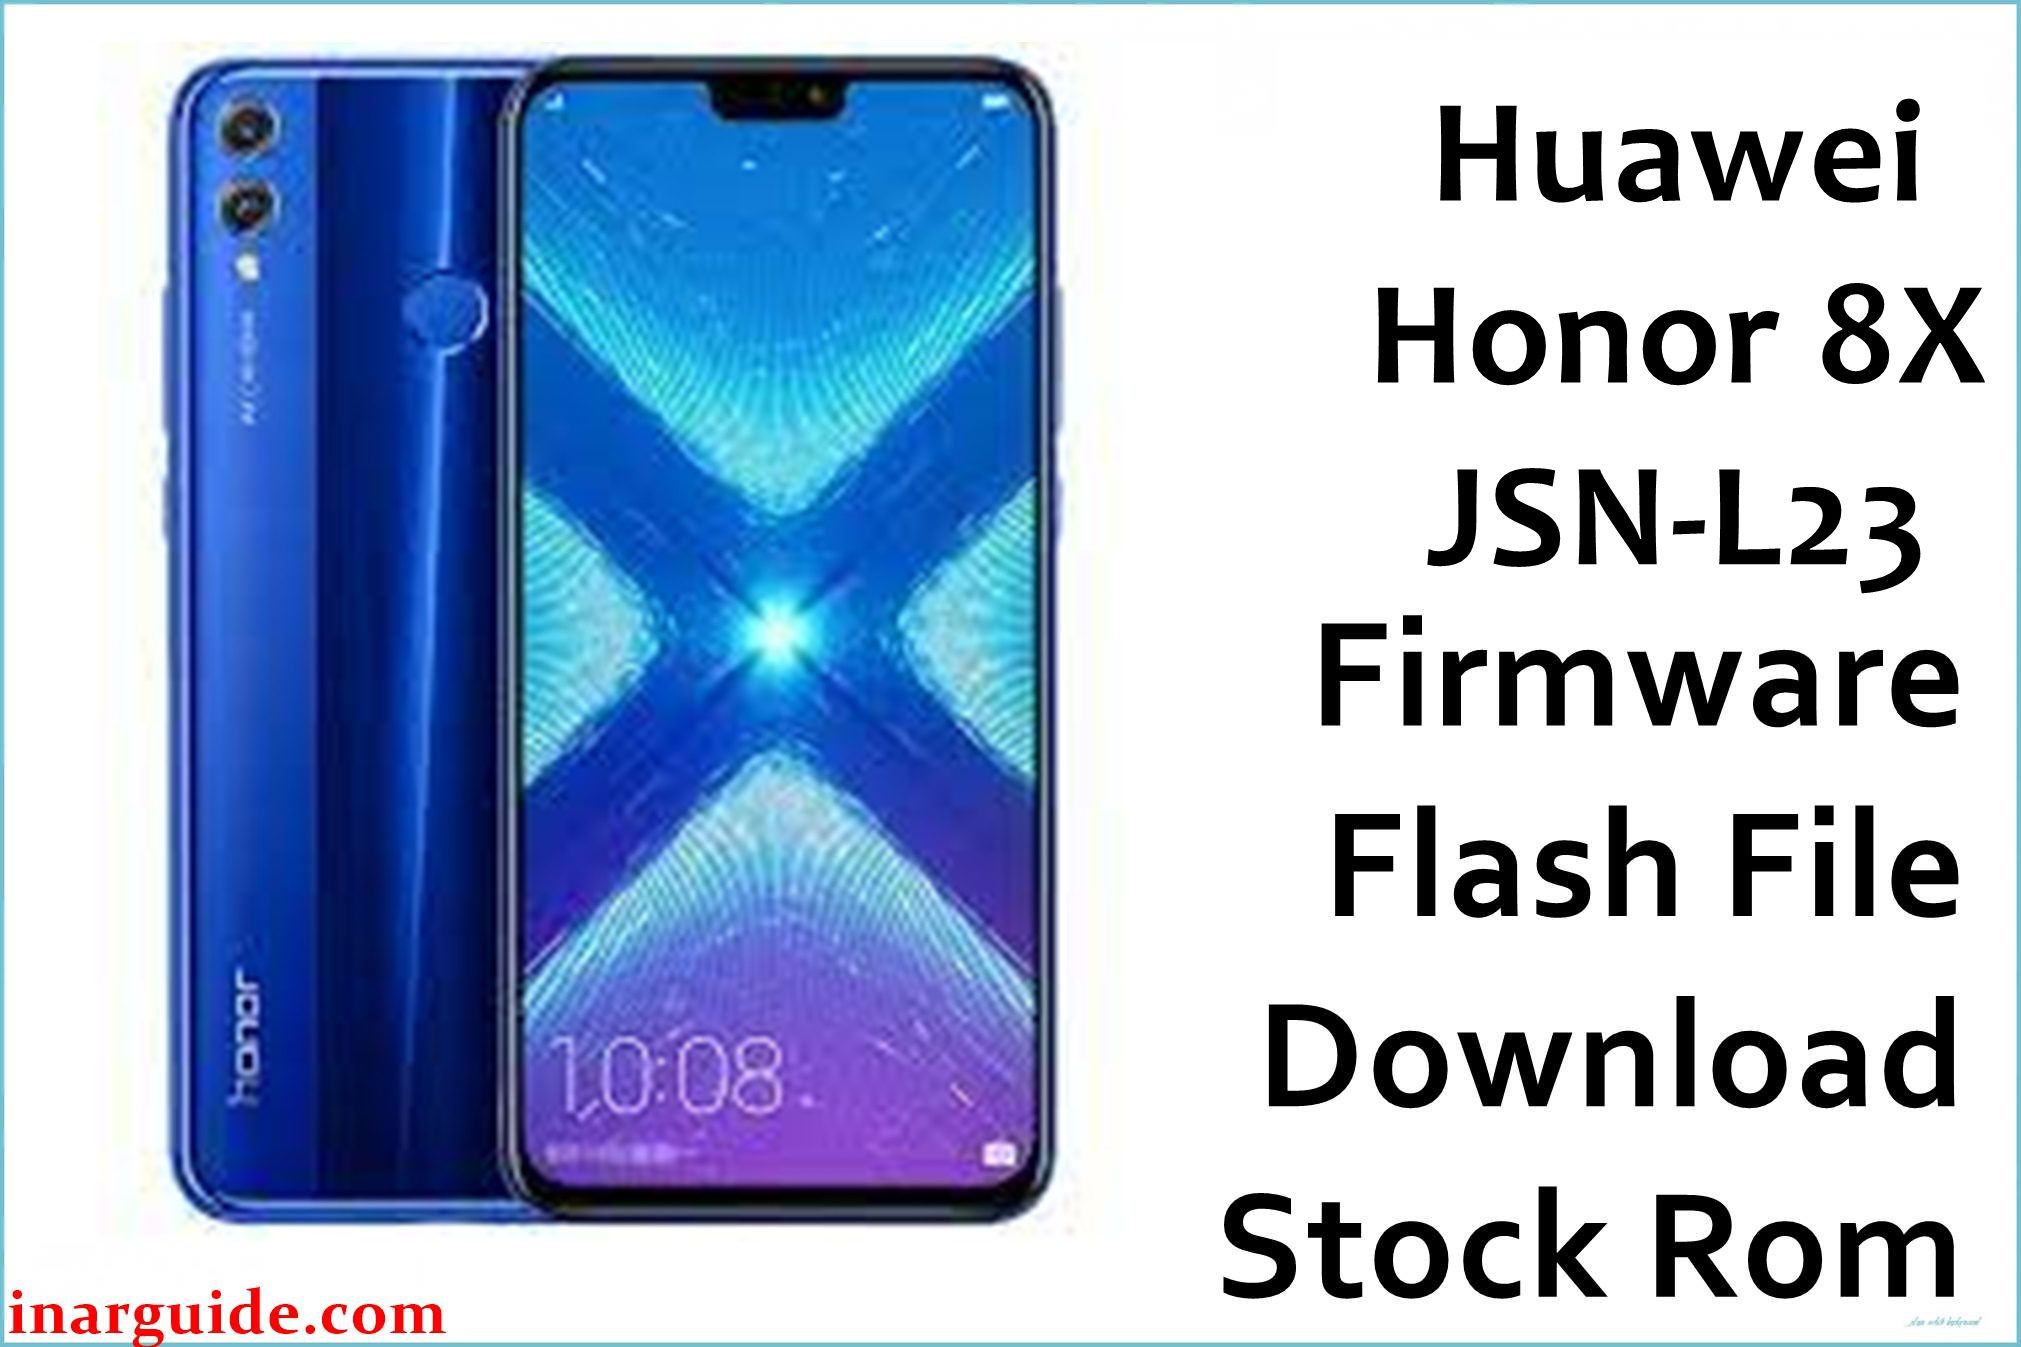 Huawei Honor 8X JSN L23